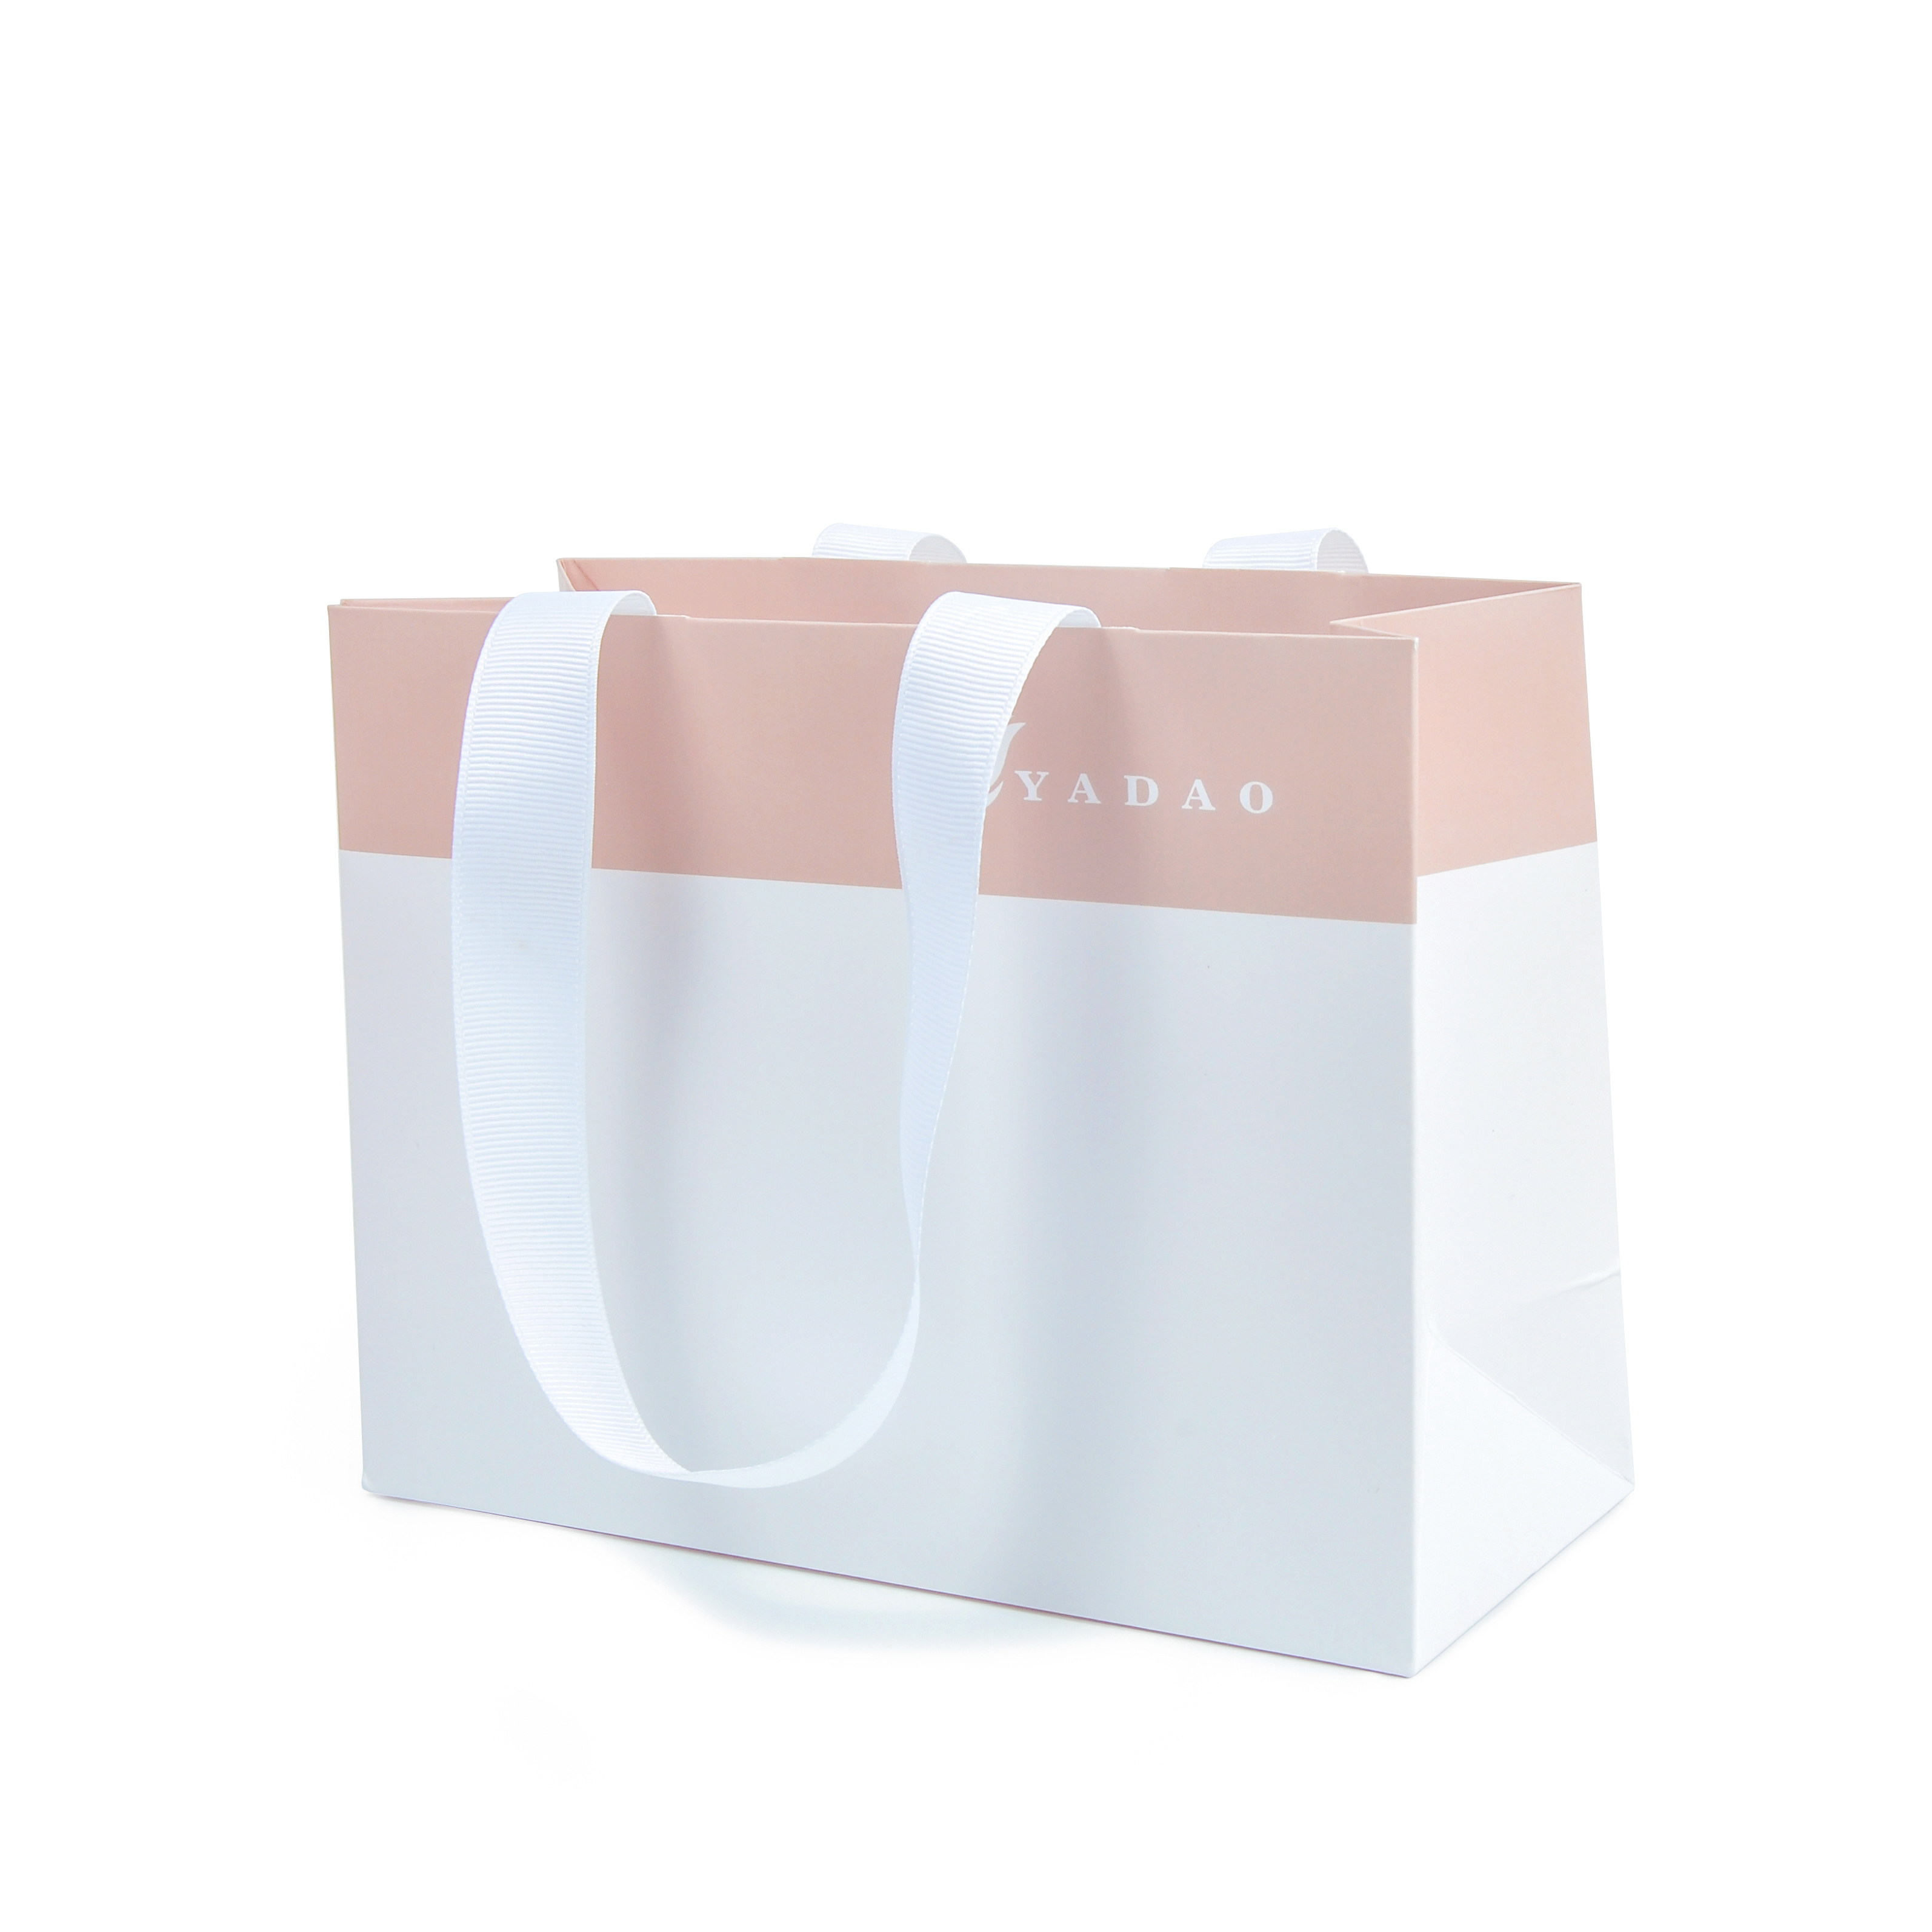 Sacchetto regalo per la spesa con sacchetto di imballaggio per gioielli personalizzato Yadao con logo stampato e manico in nastro